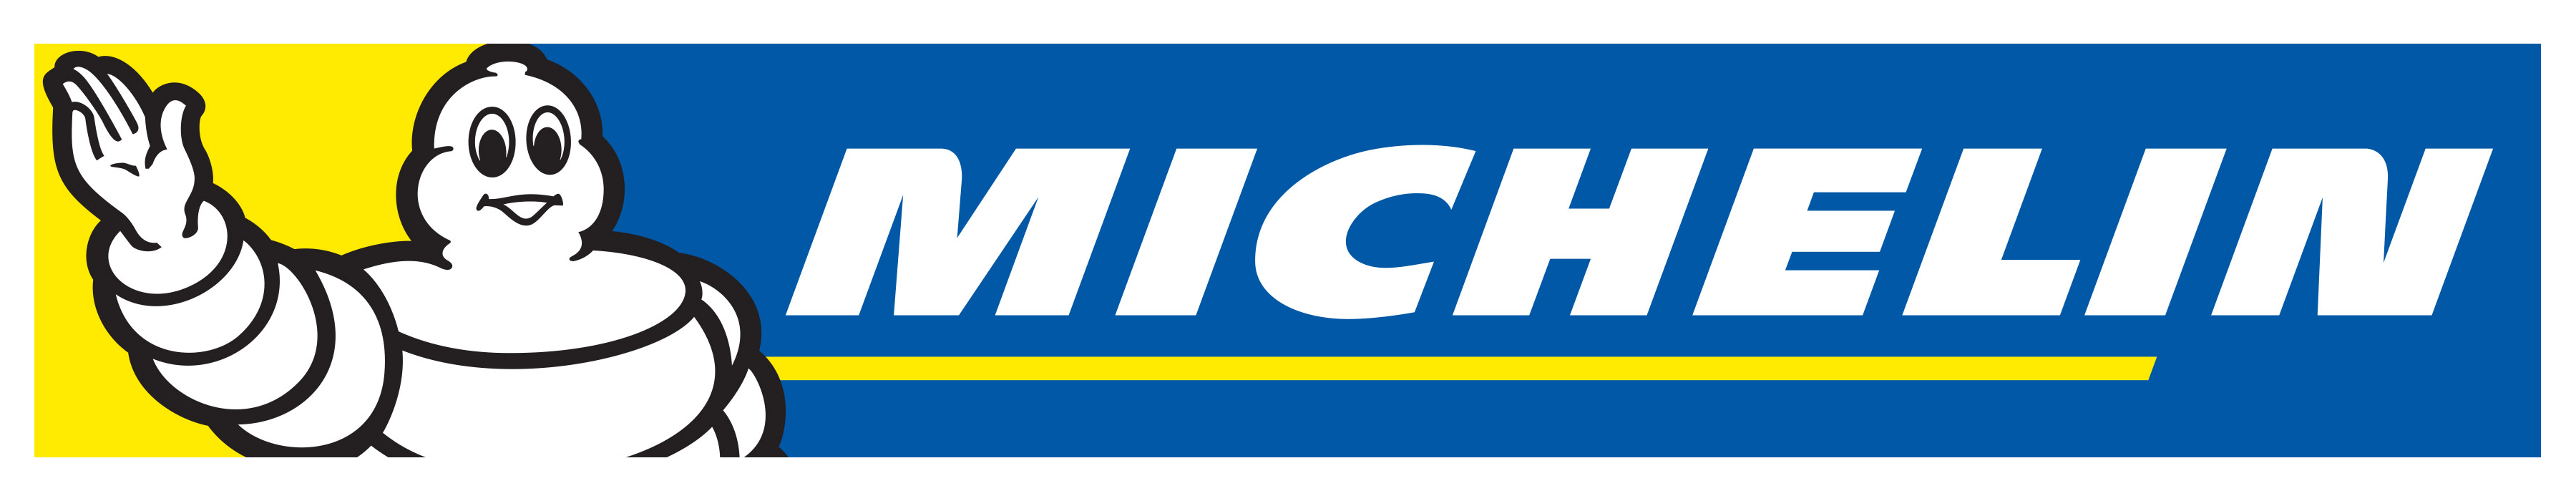 Michelin-Logo-white